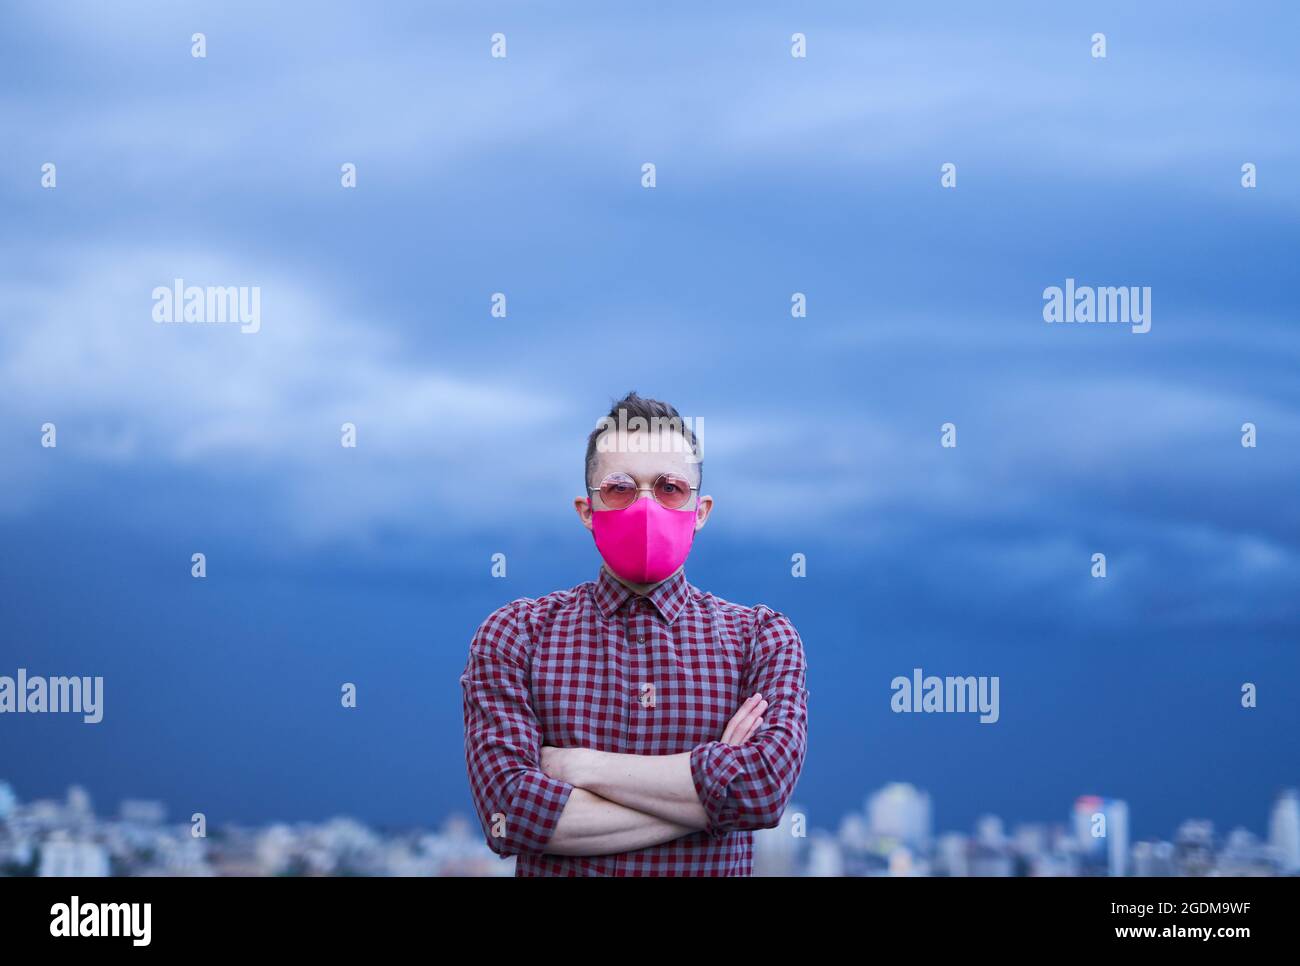 Niedliche kaukasische Homosexuell in rosa schützende Gesichtsmaske und rosa Sonnenbrille suchen direkt in der Kamera. Konzept der Hoffnung, LGBTQ-Thema. Männliche Person Porträt mit regnerischem Wetter Hintergrund und städtische Skyline Stockfoto